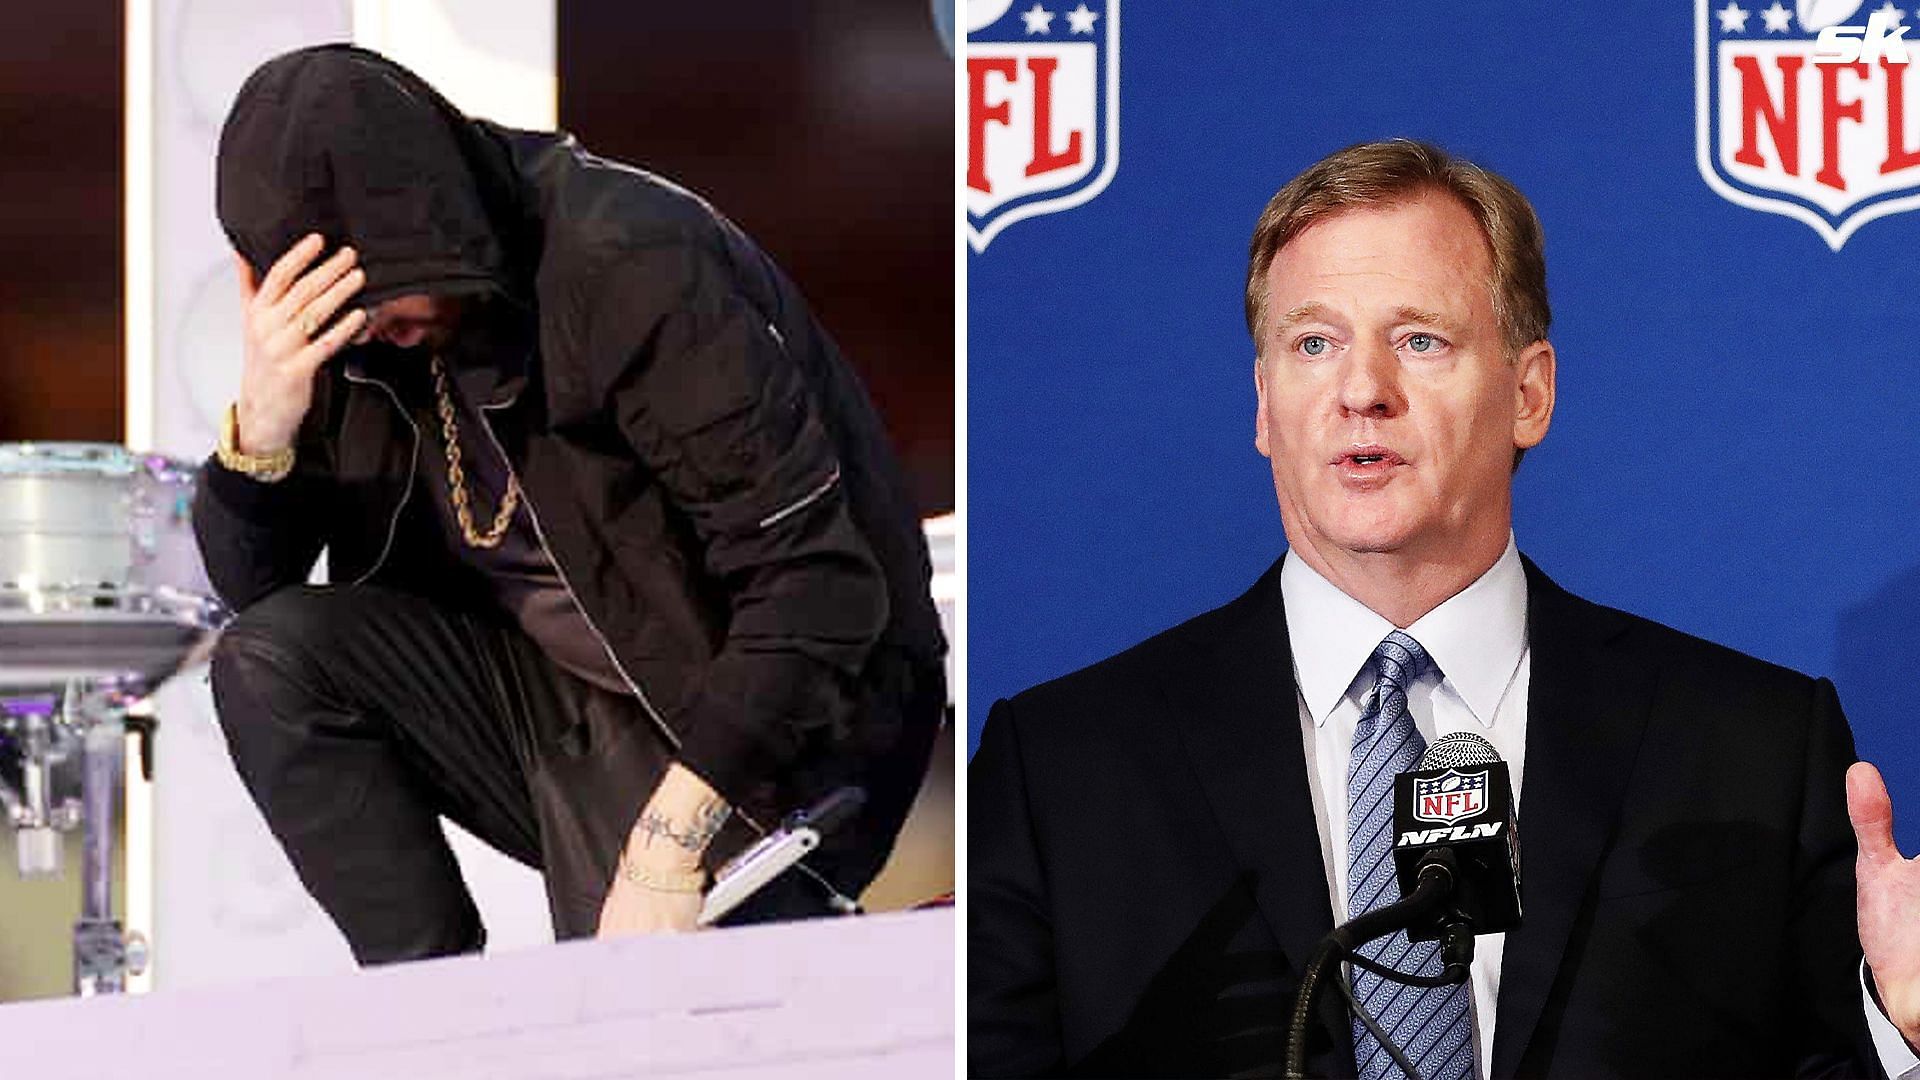 The rapper Eminem taking a knee during the Half-Time Show; NFL commissioner Roger Goodell